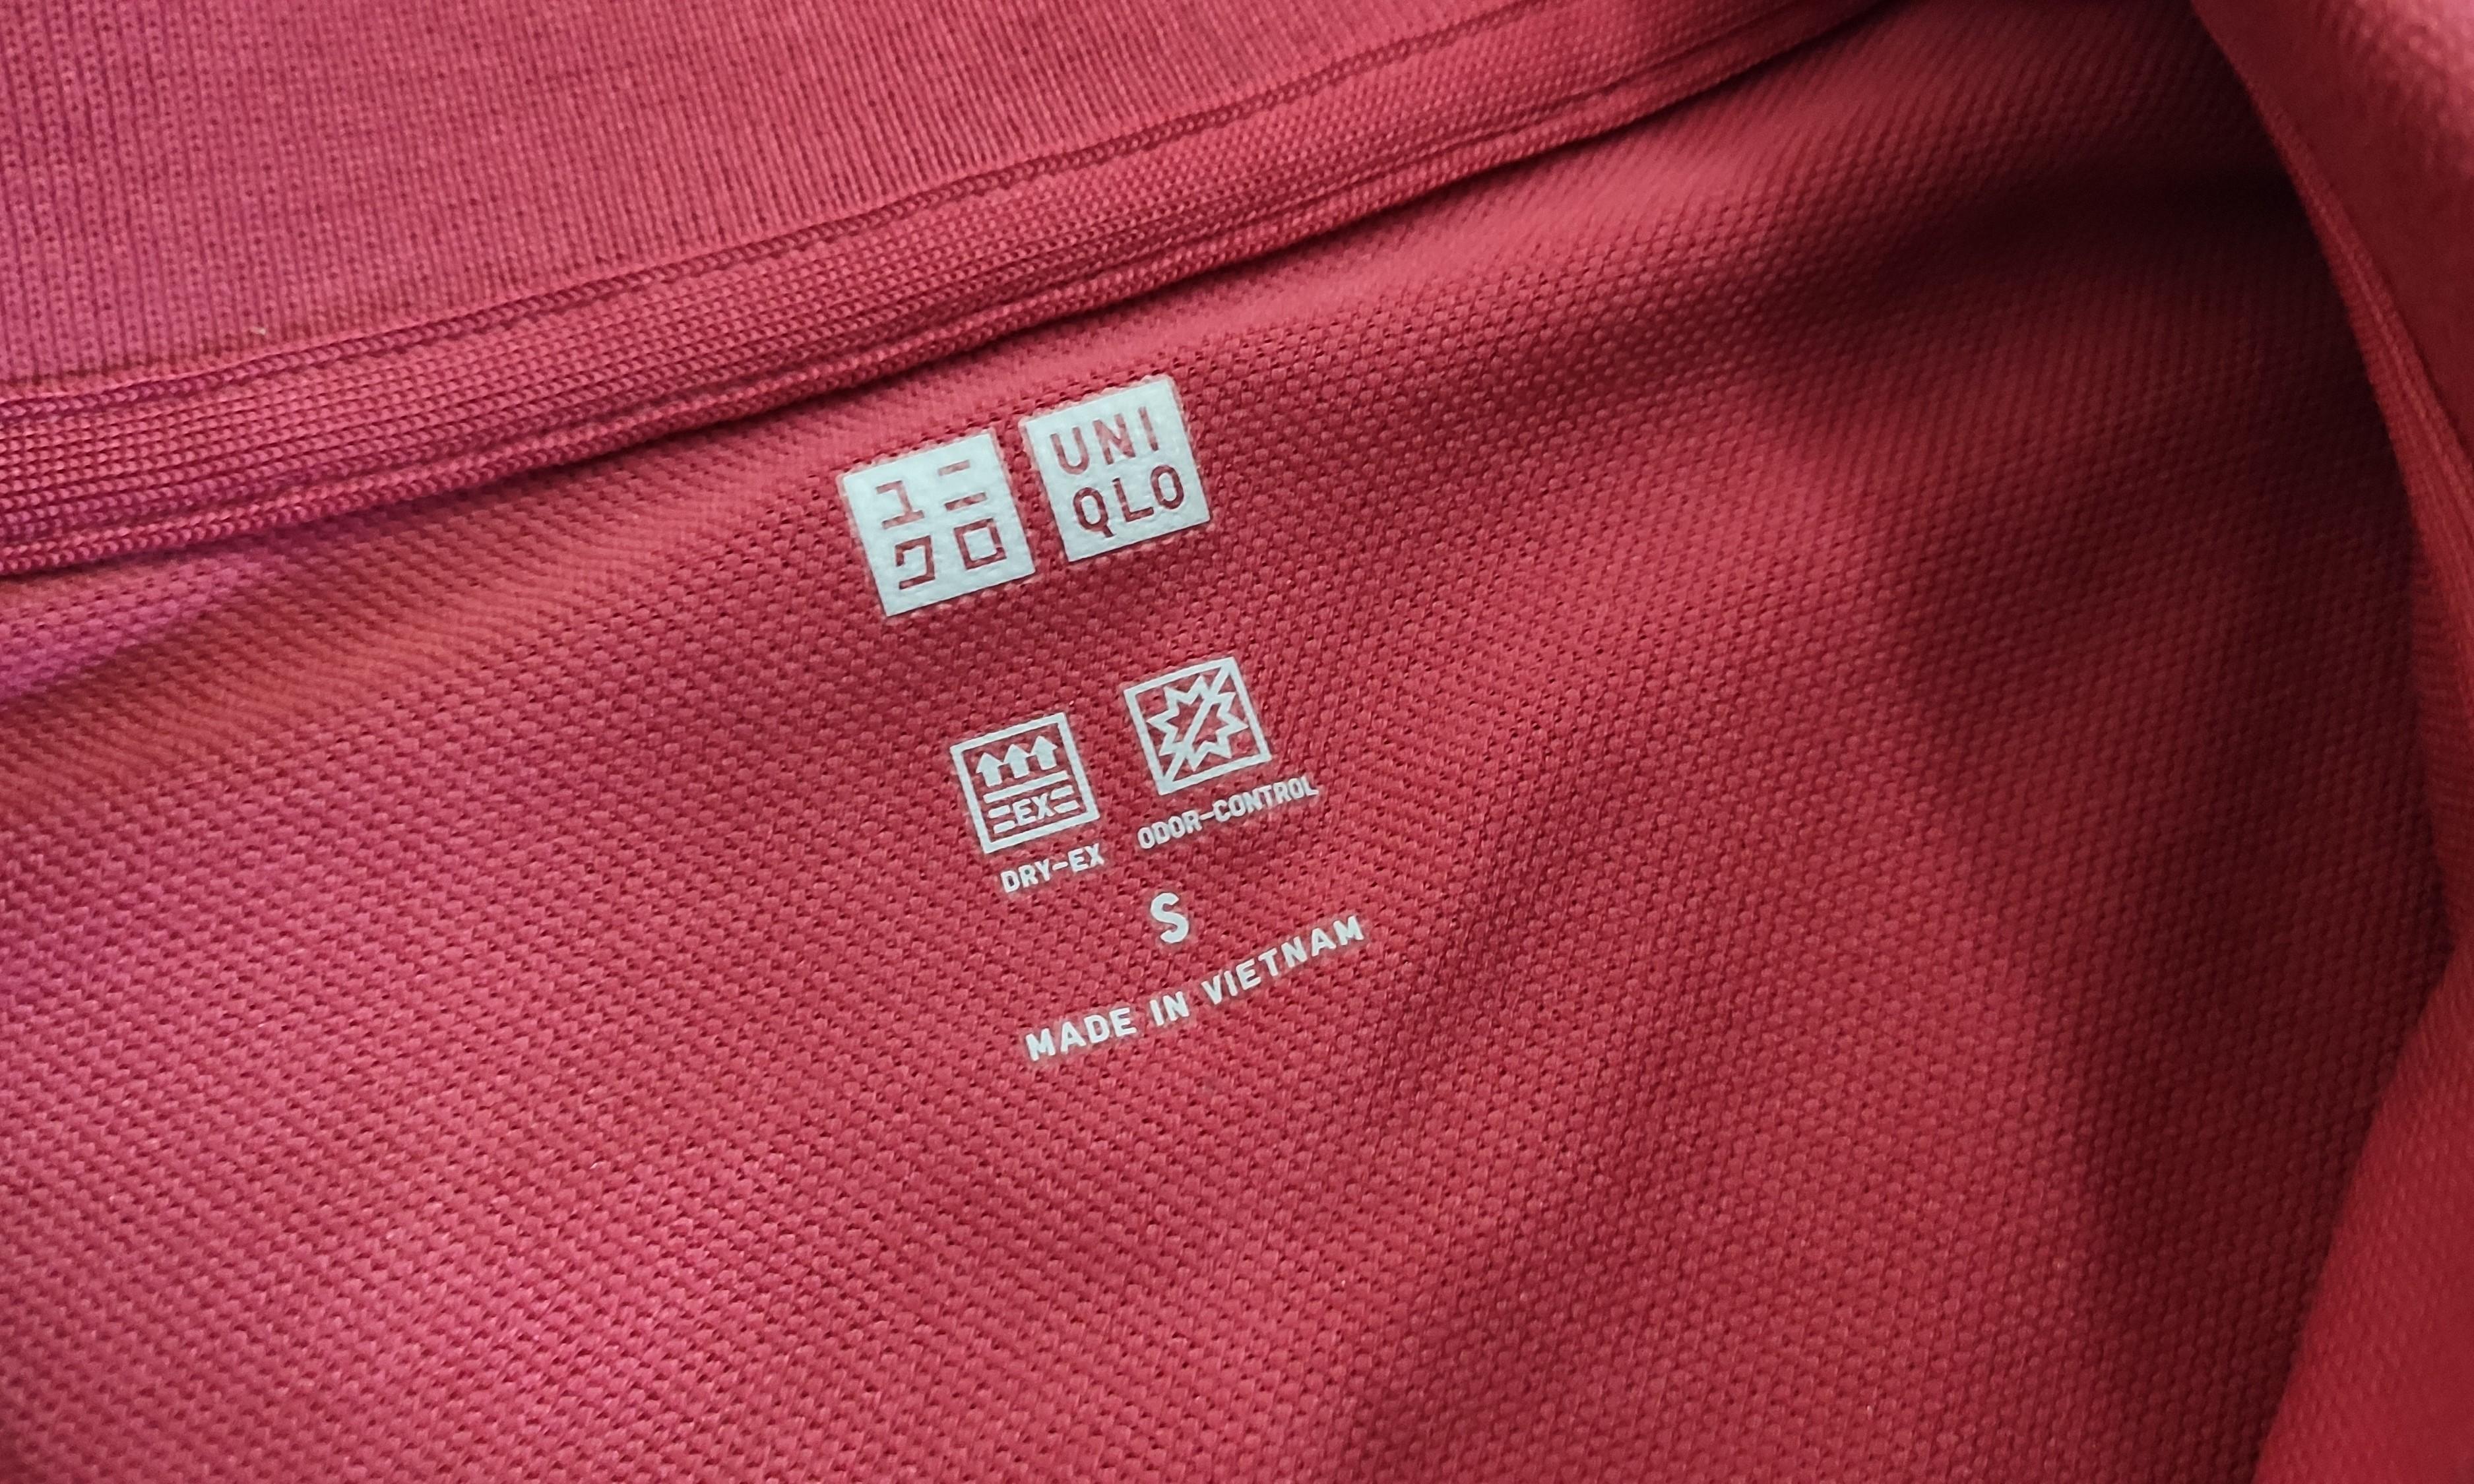 Uniqlo Dry-Ex Short Sleeve Polo Shirt, Men's Fashion, Tops & Sets